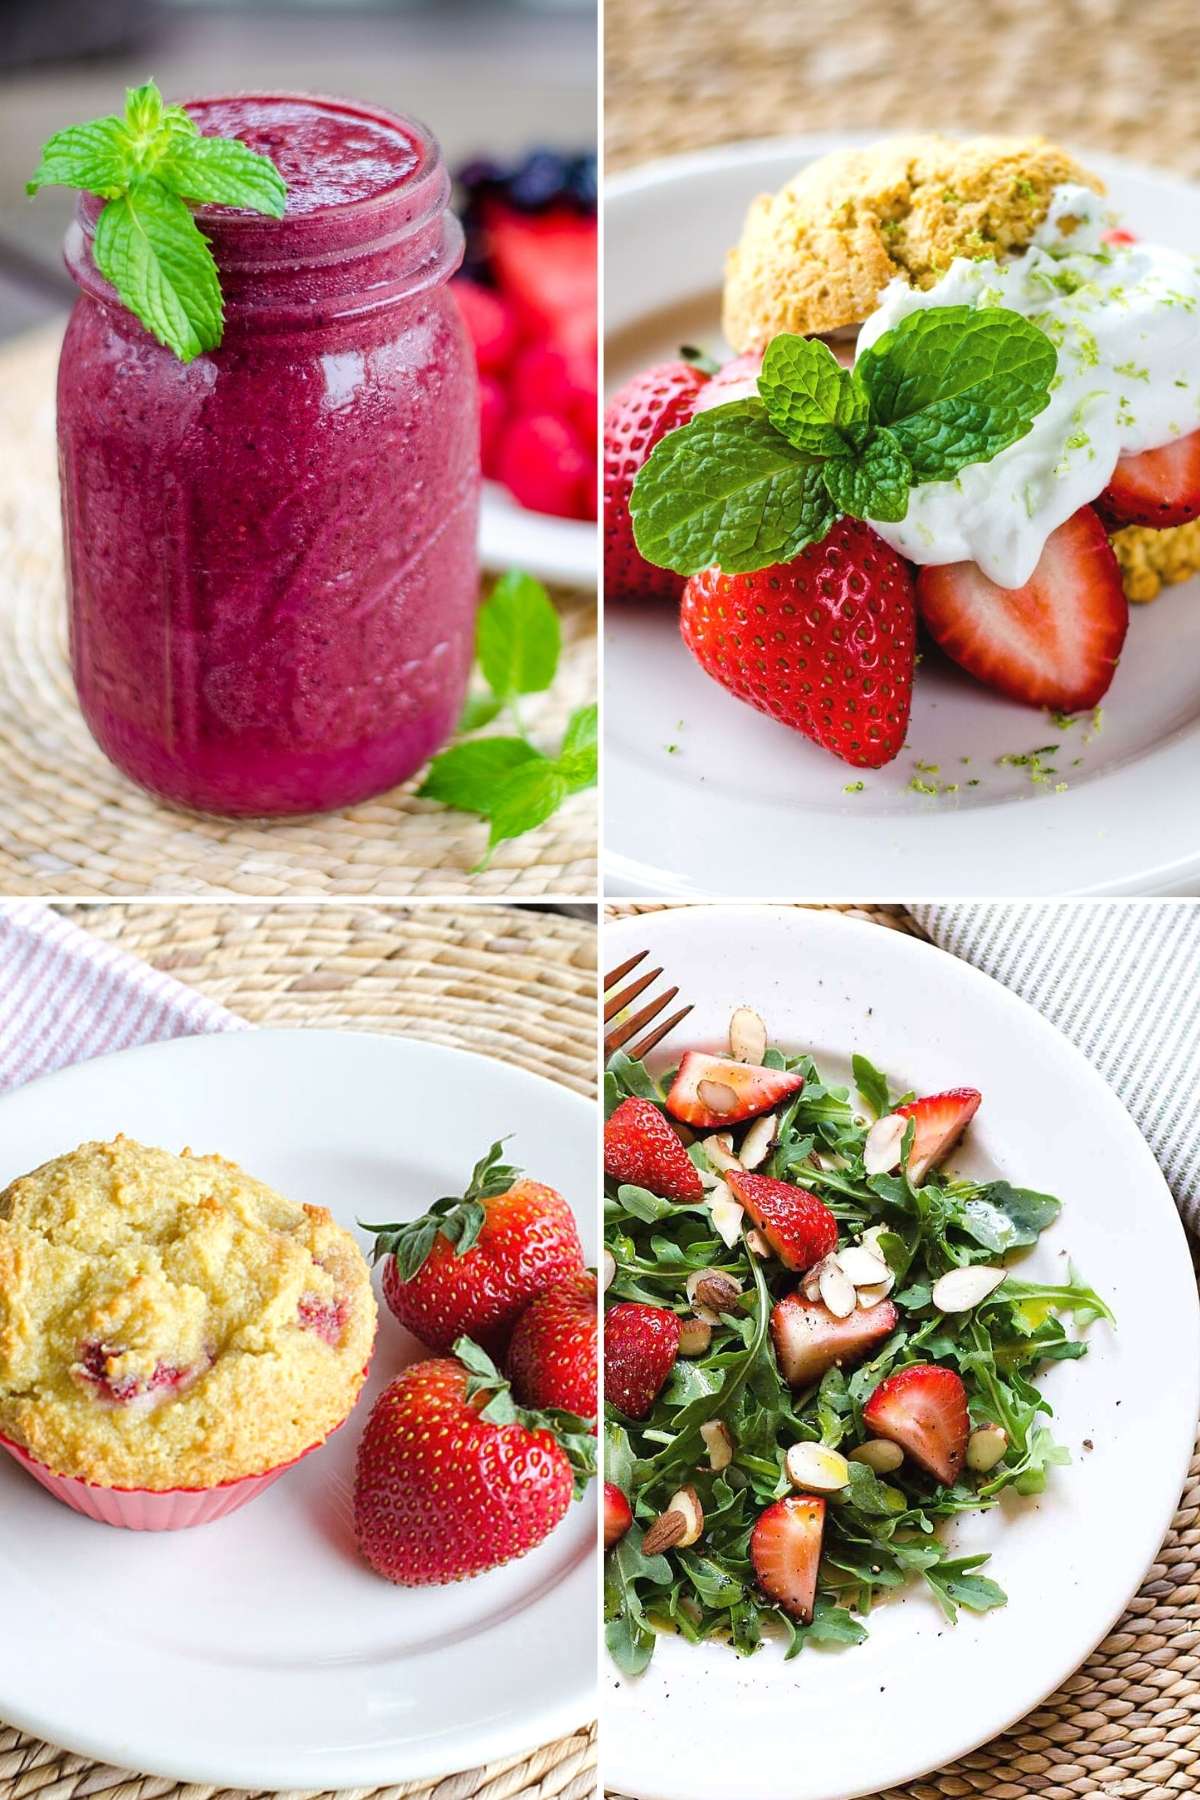 Watermelon berry smoothie, strawberry shortcake, muffins, salad